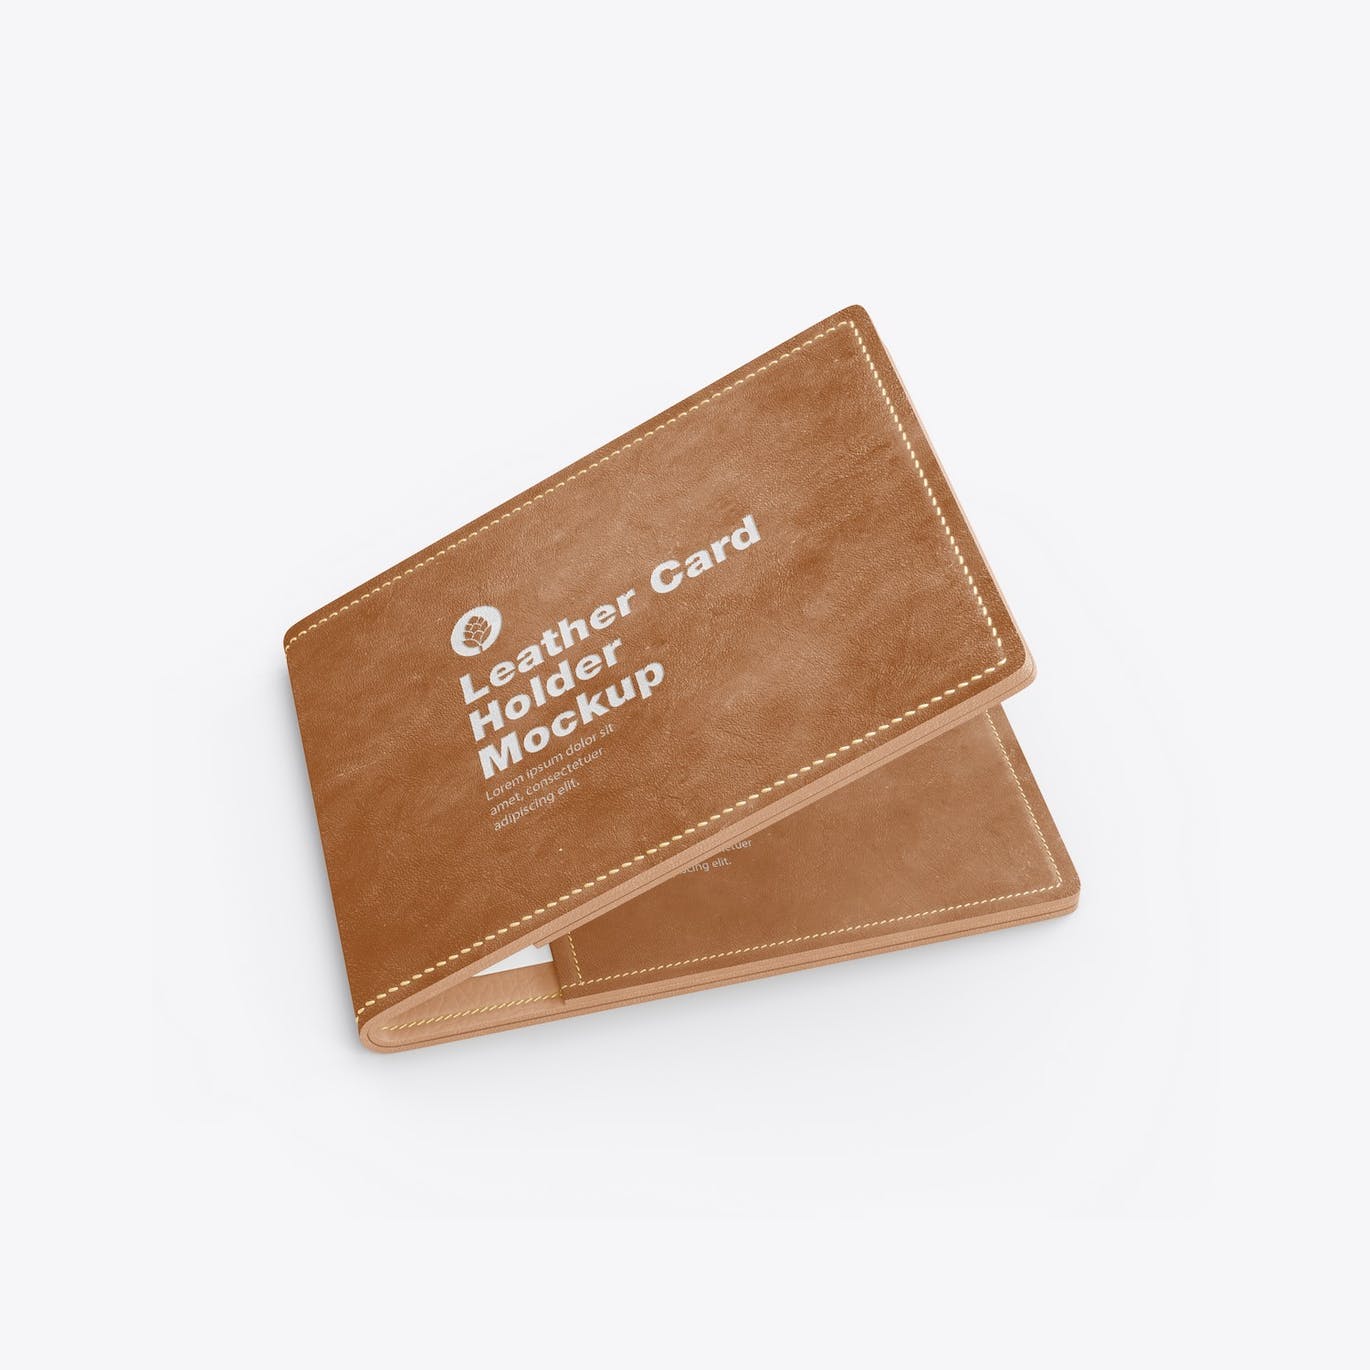 皮革卡片钱包夹设计样机模板 Leather Card Holder Mockup 样机素材 第4张